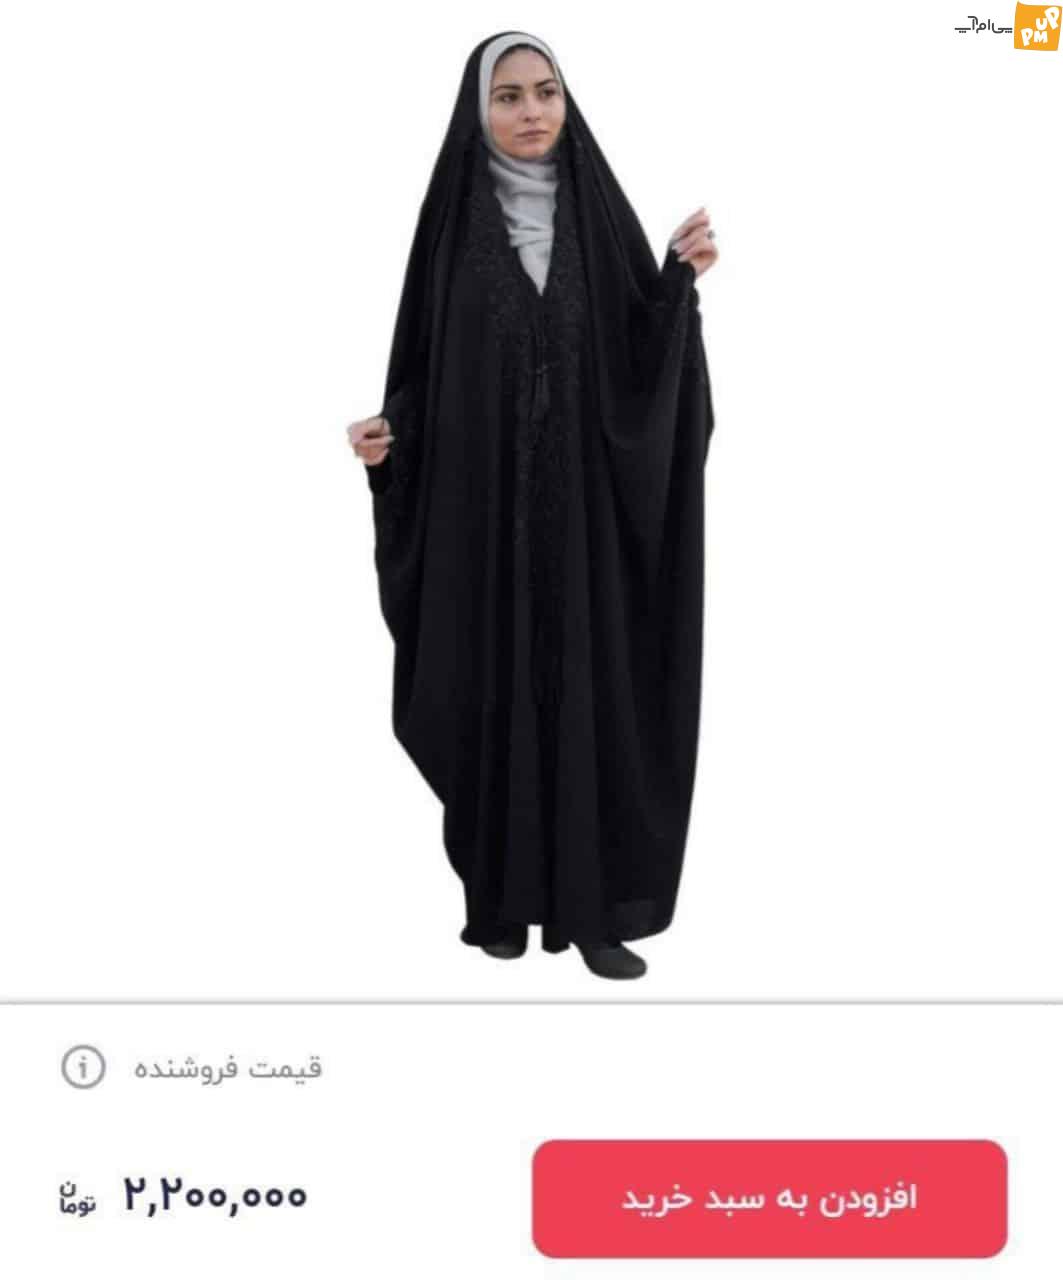 عکس بی حجابی ارزانتر از حجاب اسلامی است